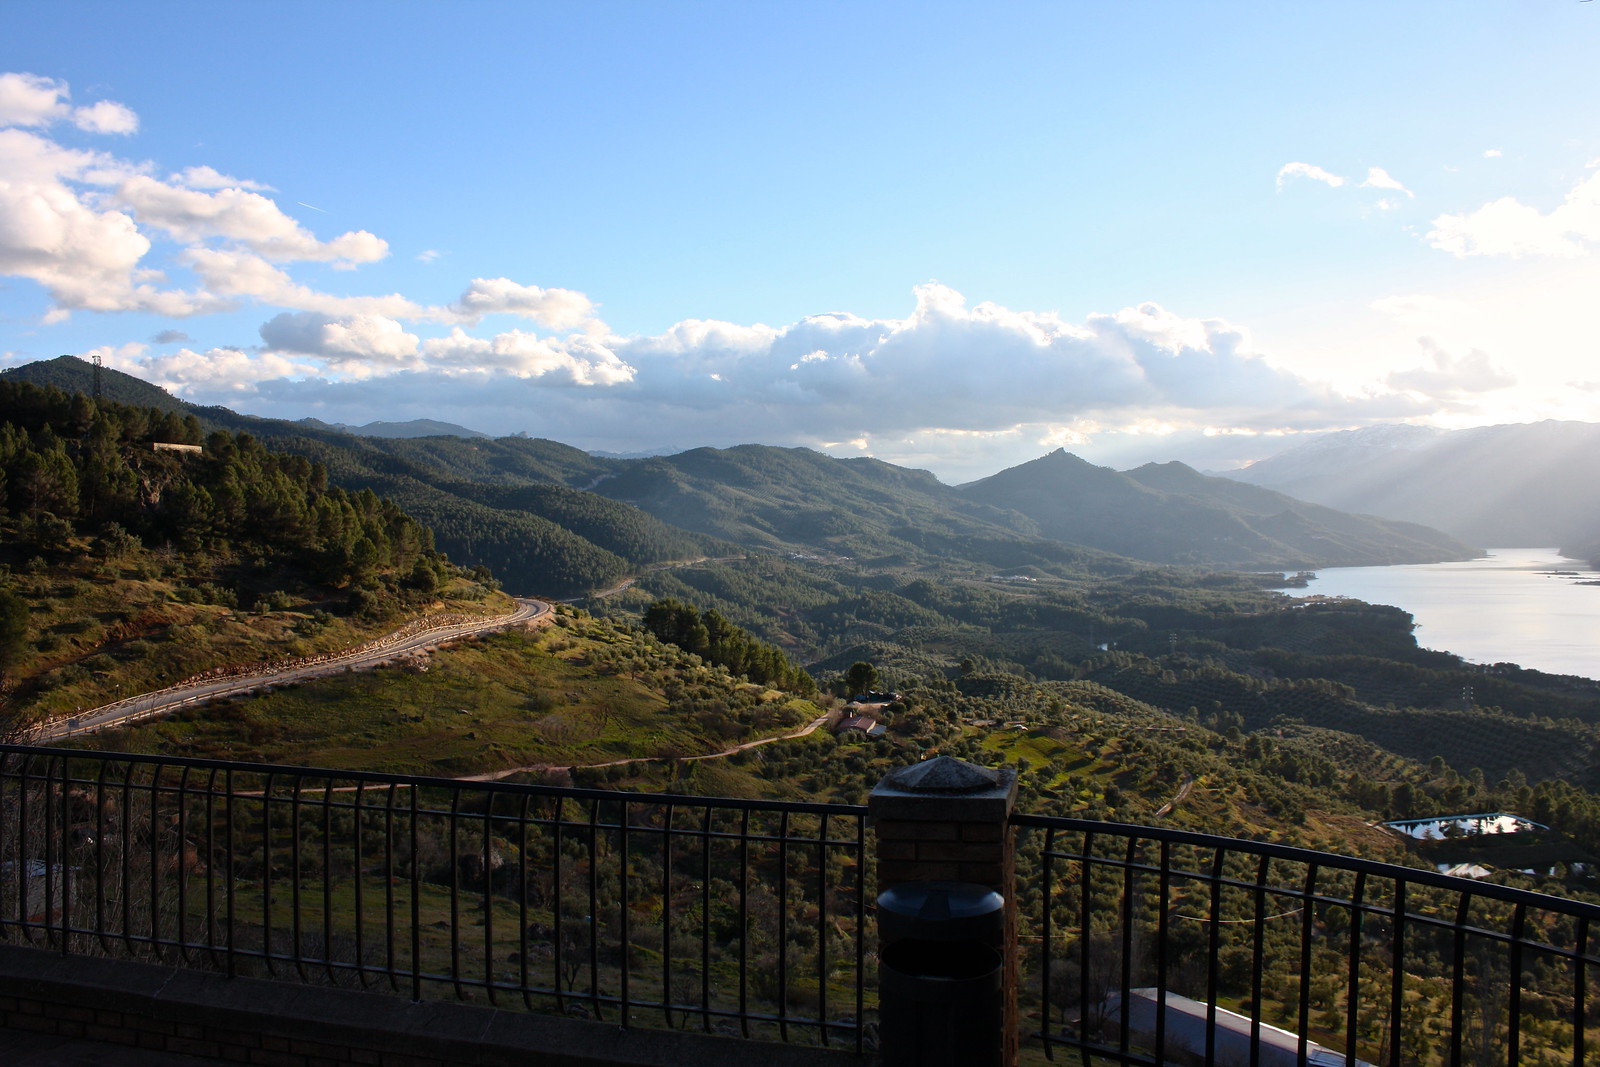 Tranco reservoir, Sierra de Segura, Spain